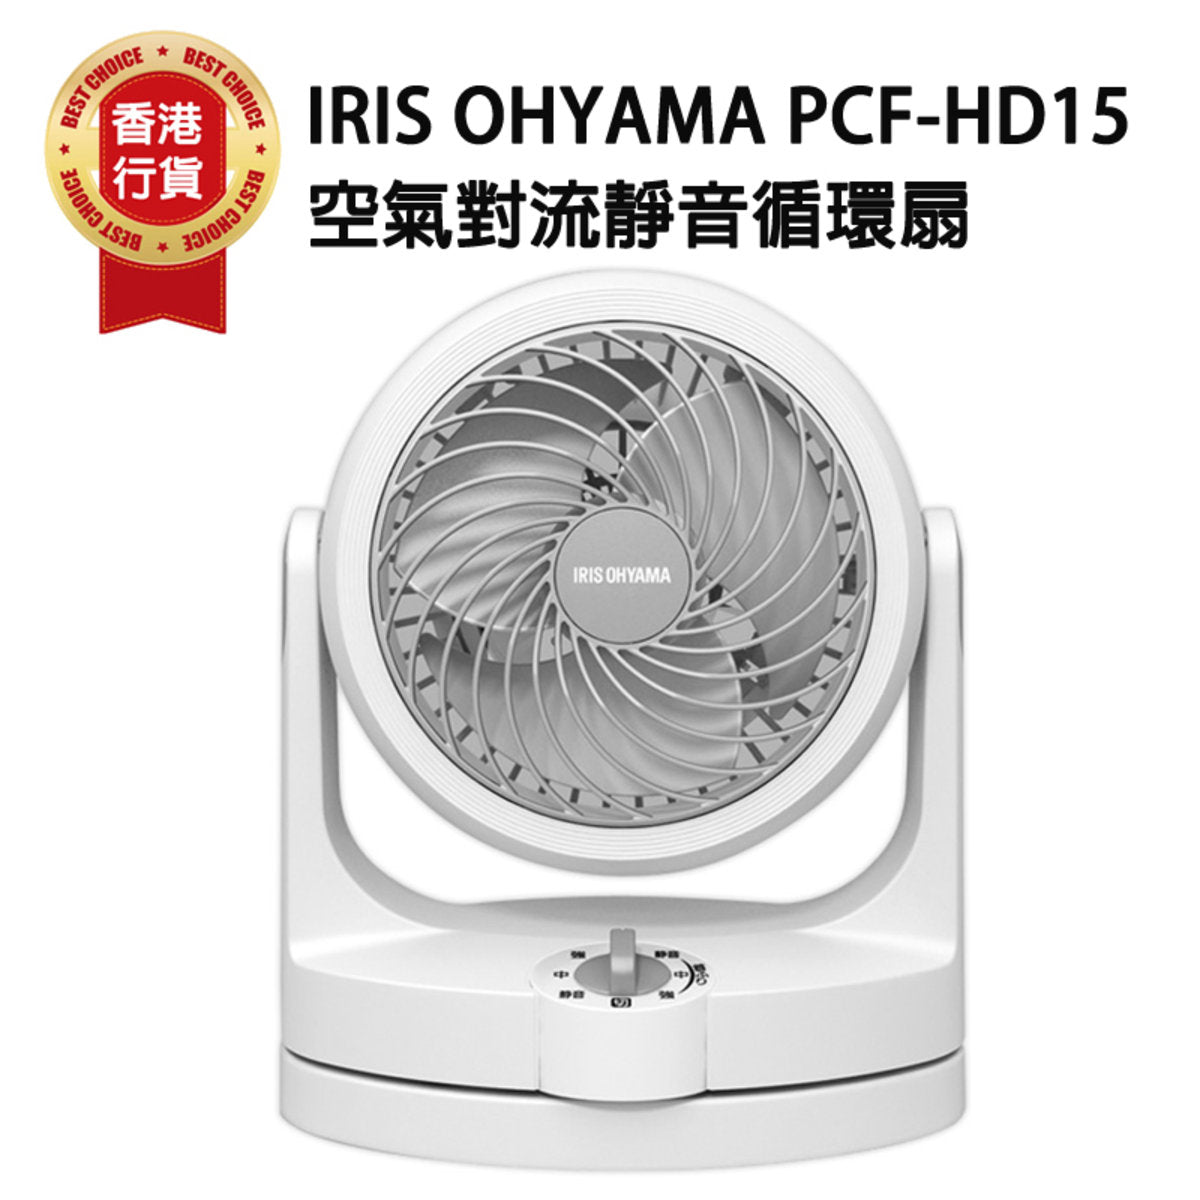 IRIS - PCF-HD15 Silent Air Convection Circulation Fan | Convection Fan | Circulation Fan | Stand | Floor | Turbine Airflow - White